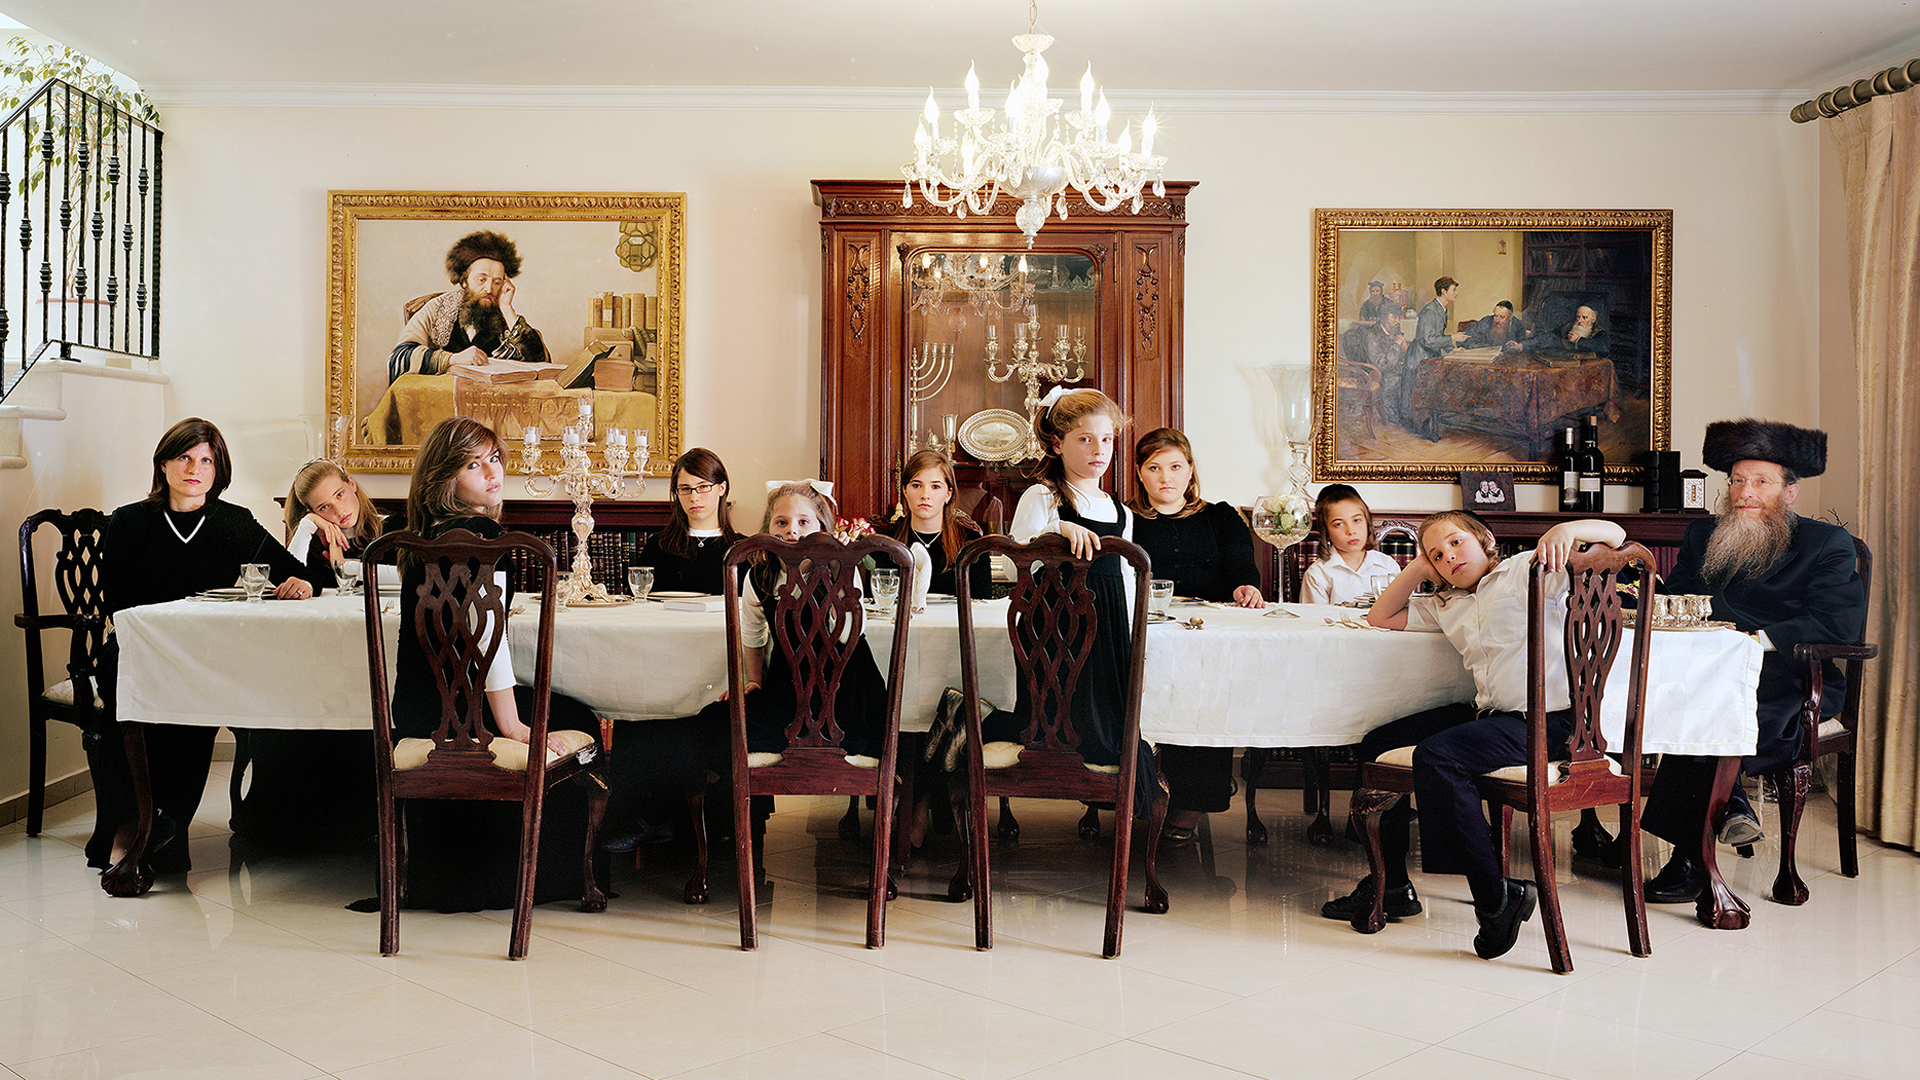 Zu Gast bei einer orthodoxen Großfamilie: Frédéric Brenner hat für seine Arbeit auch Stereotype der israelischen Gesellschaft fotografiert